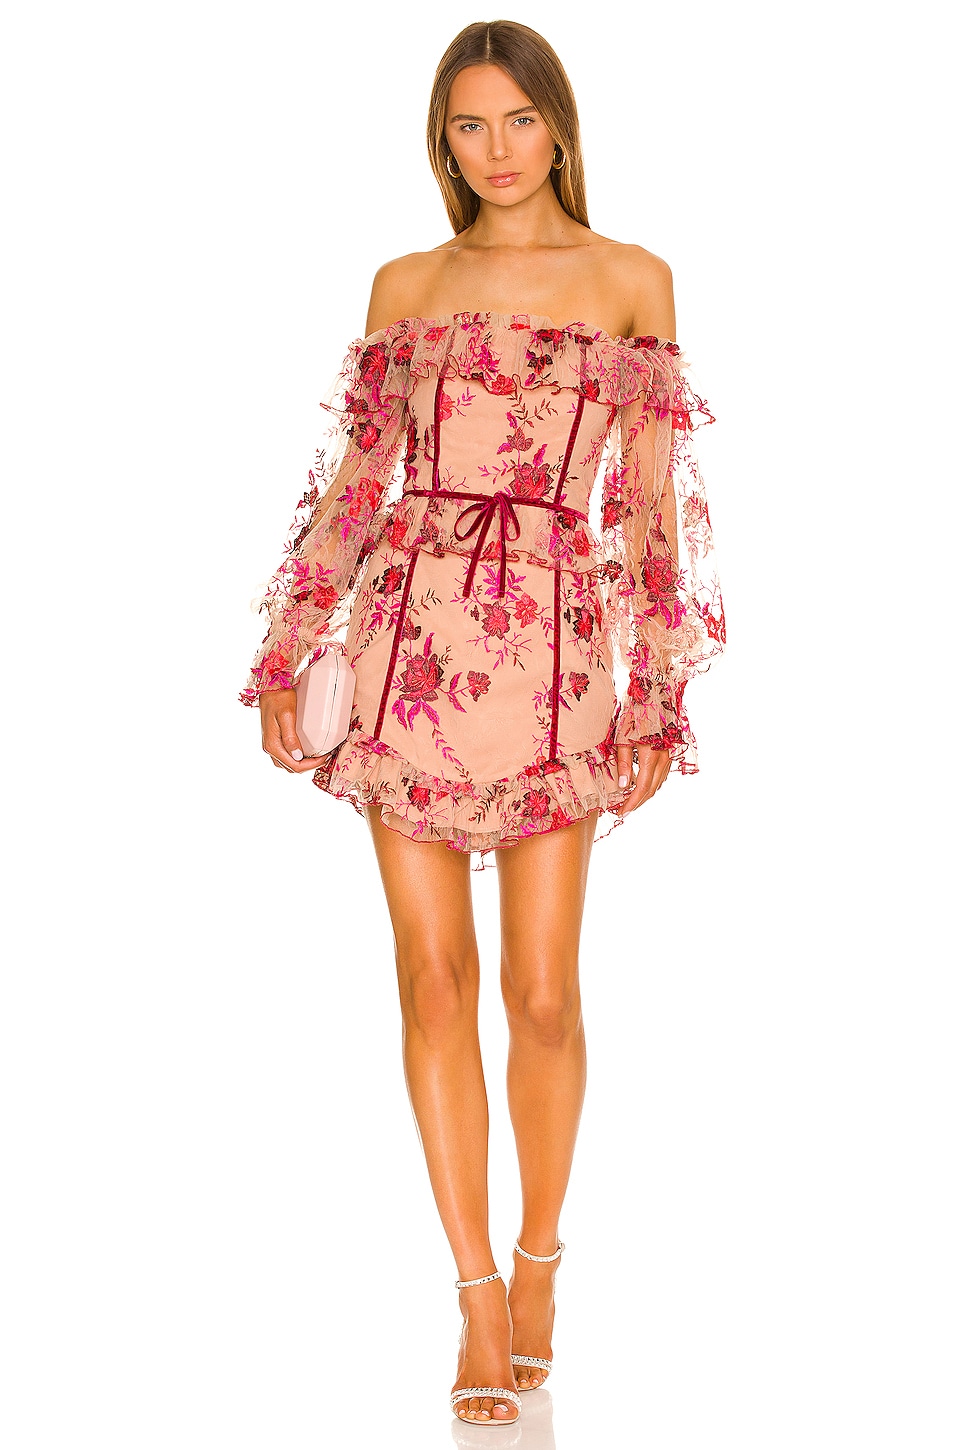 MAJORELLE Fae Mini Dress in Scarlet Vineyard | REVOLVE